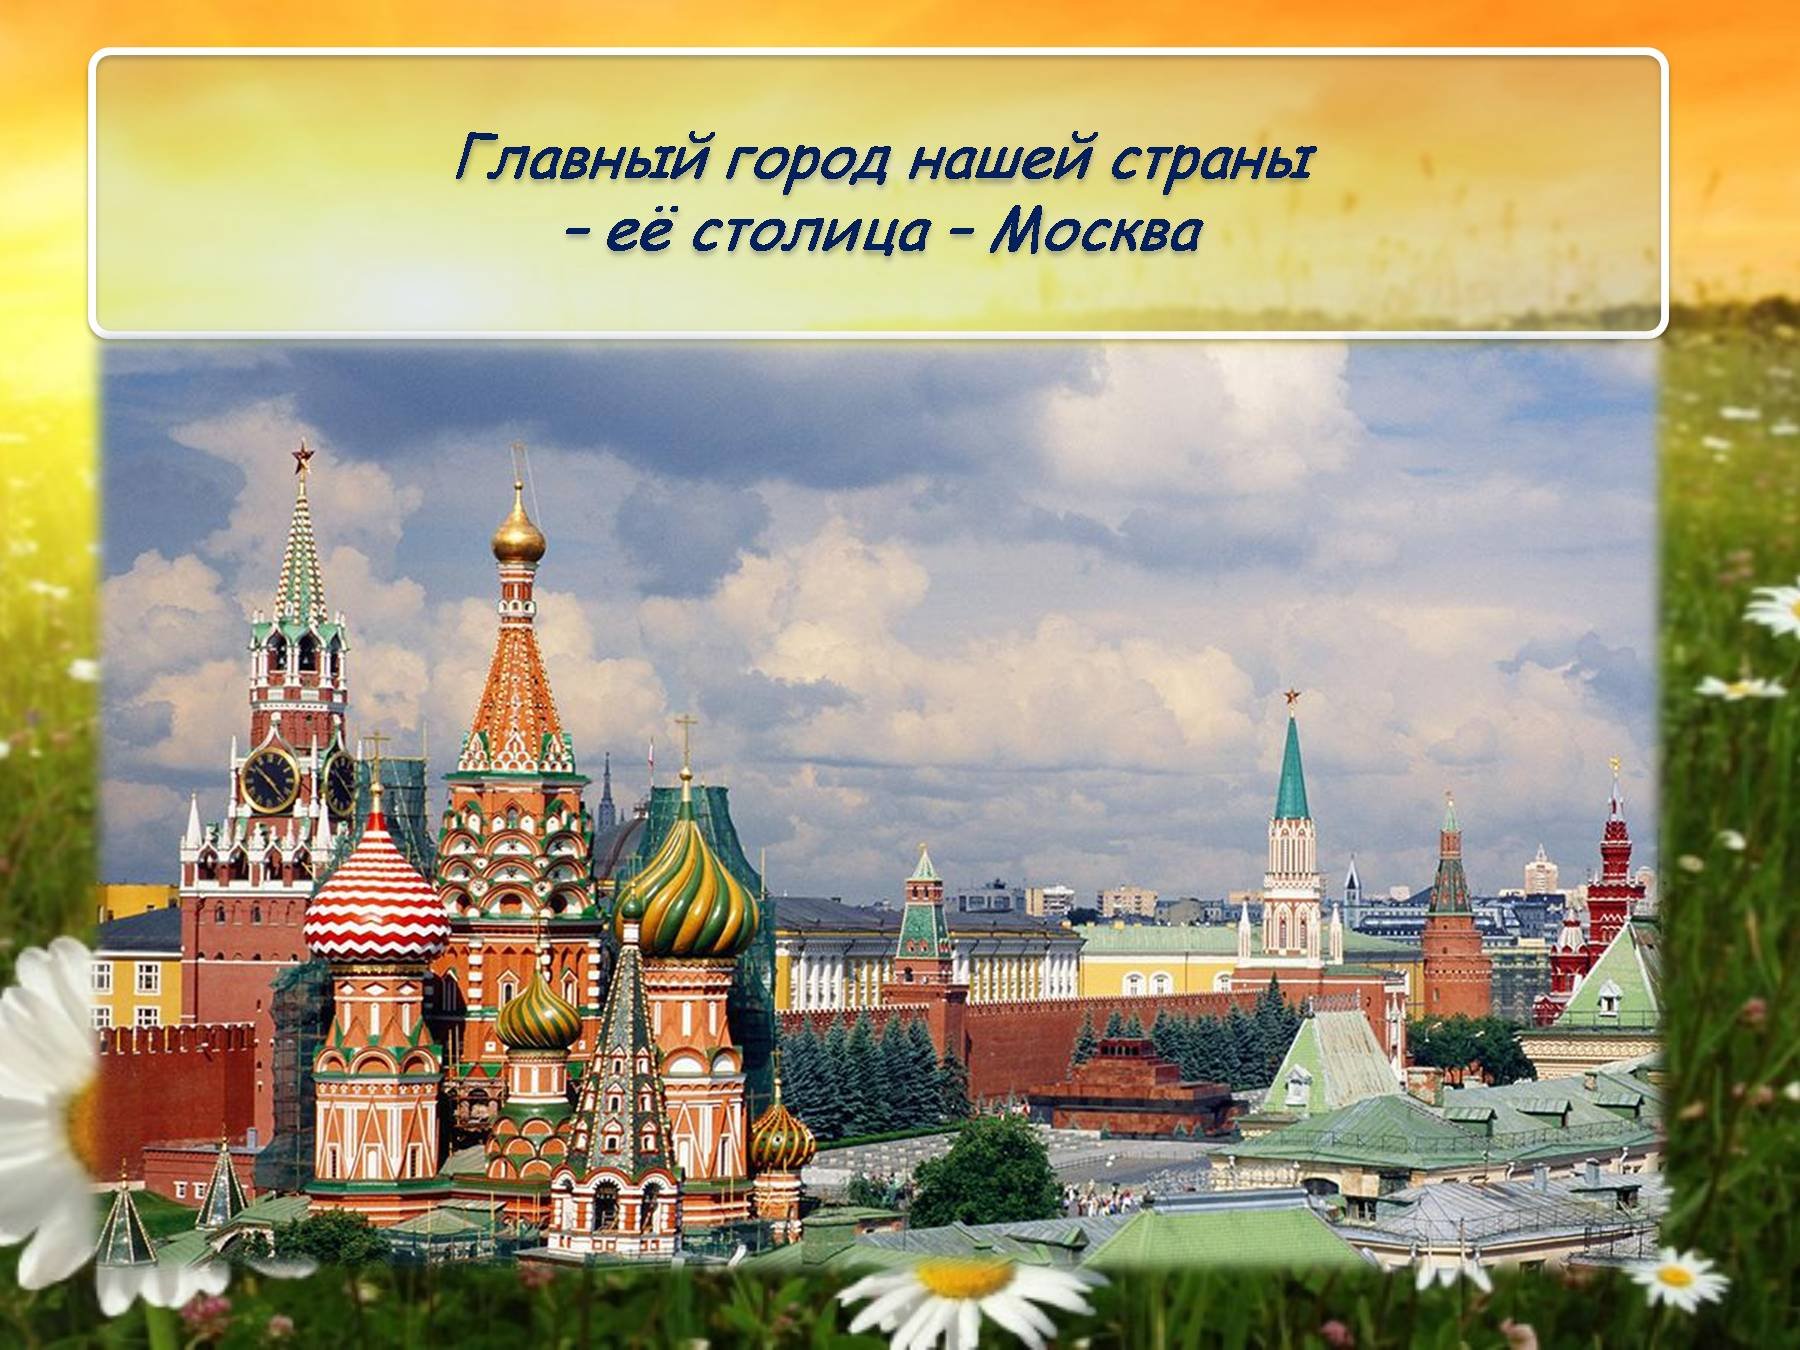 Столица главной страны. Москва - столица России. Города нашей Родины. Главный город Москва. Москва главный город нашей Родины.